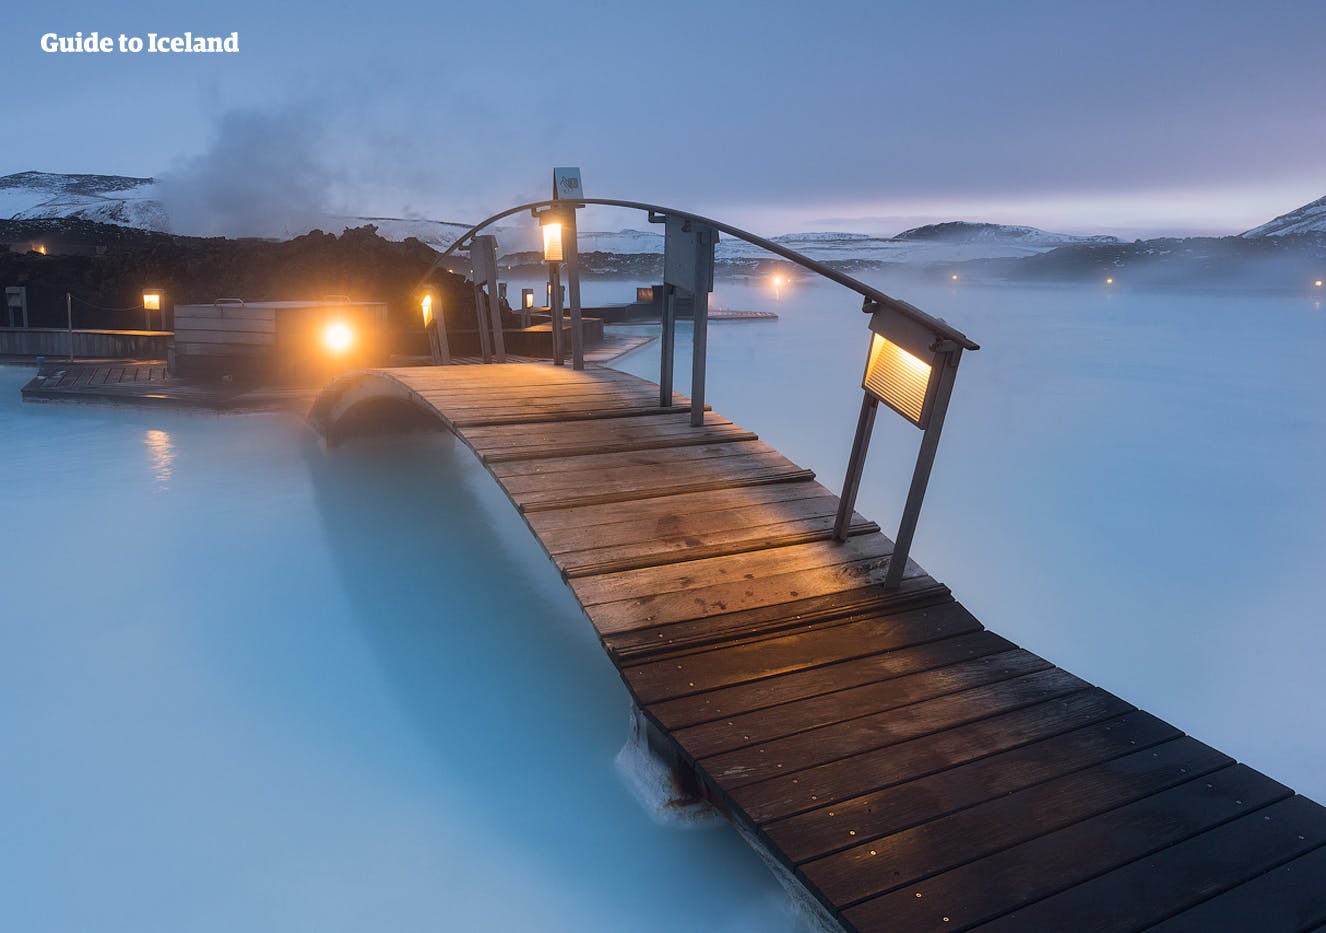 Zwiedzanie geotermalnego spa Blue Lagoon to najlepszy sposób na zakończenie przygody w Islandii.